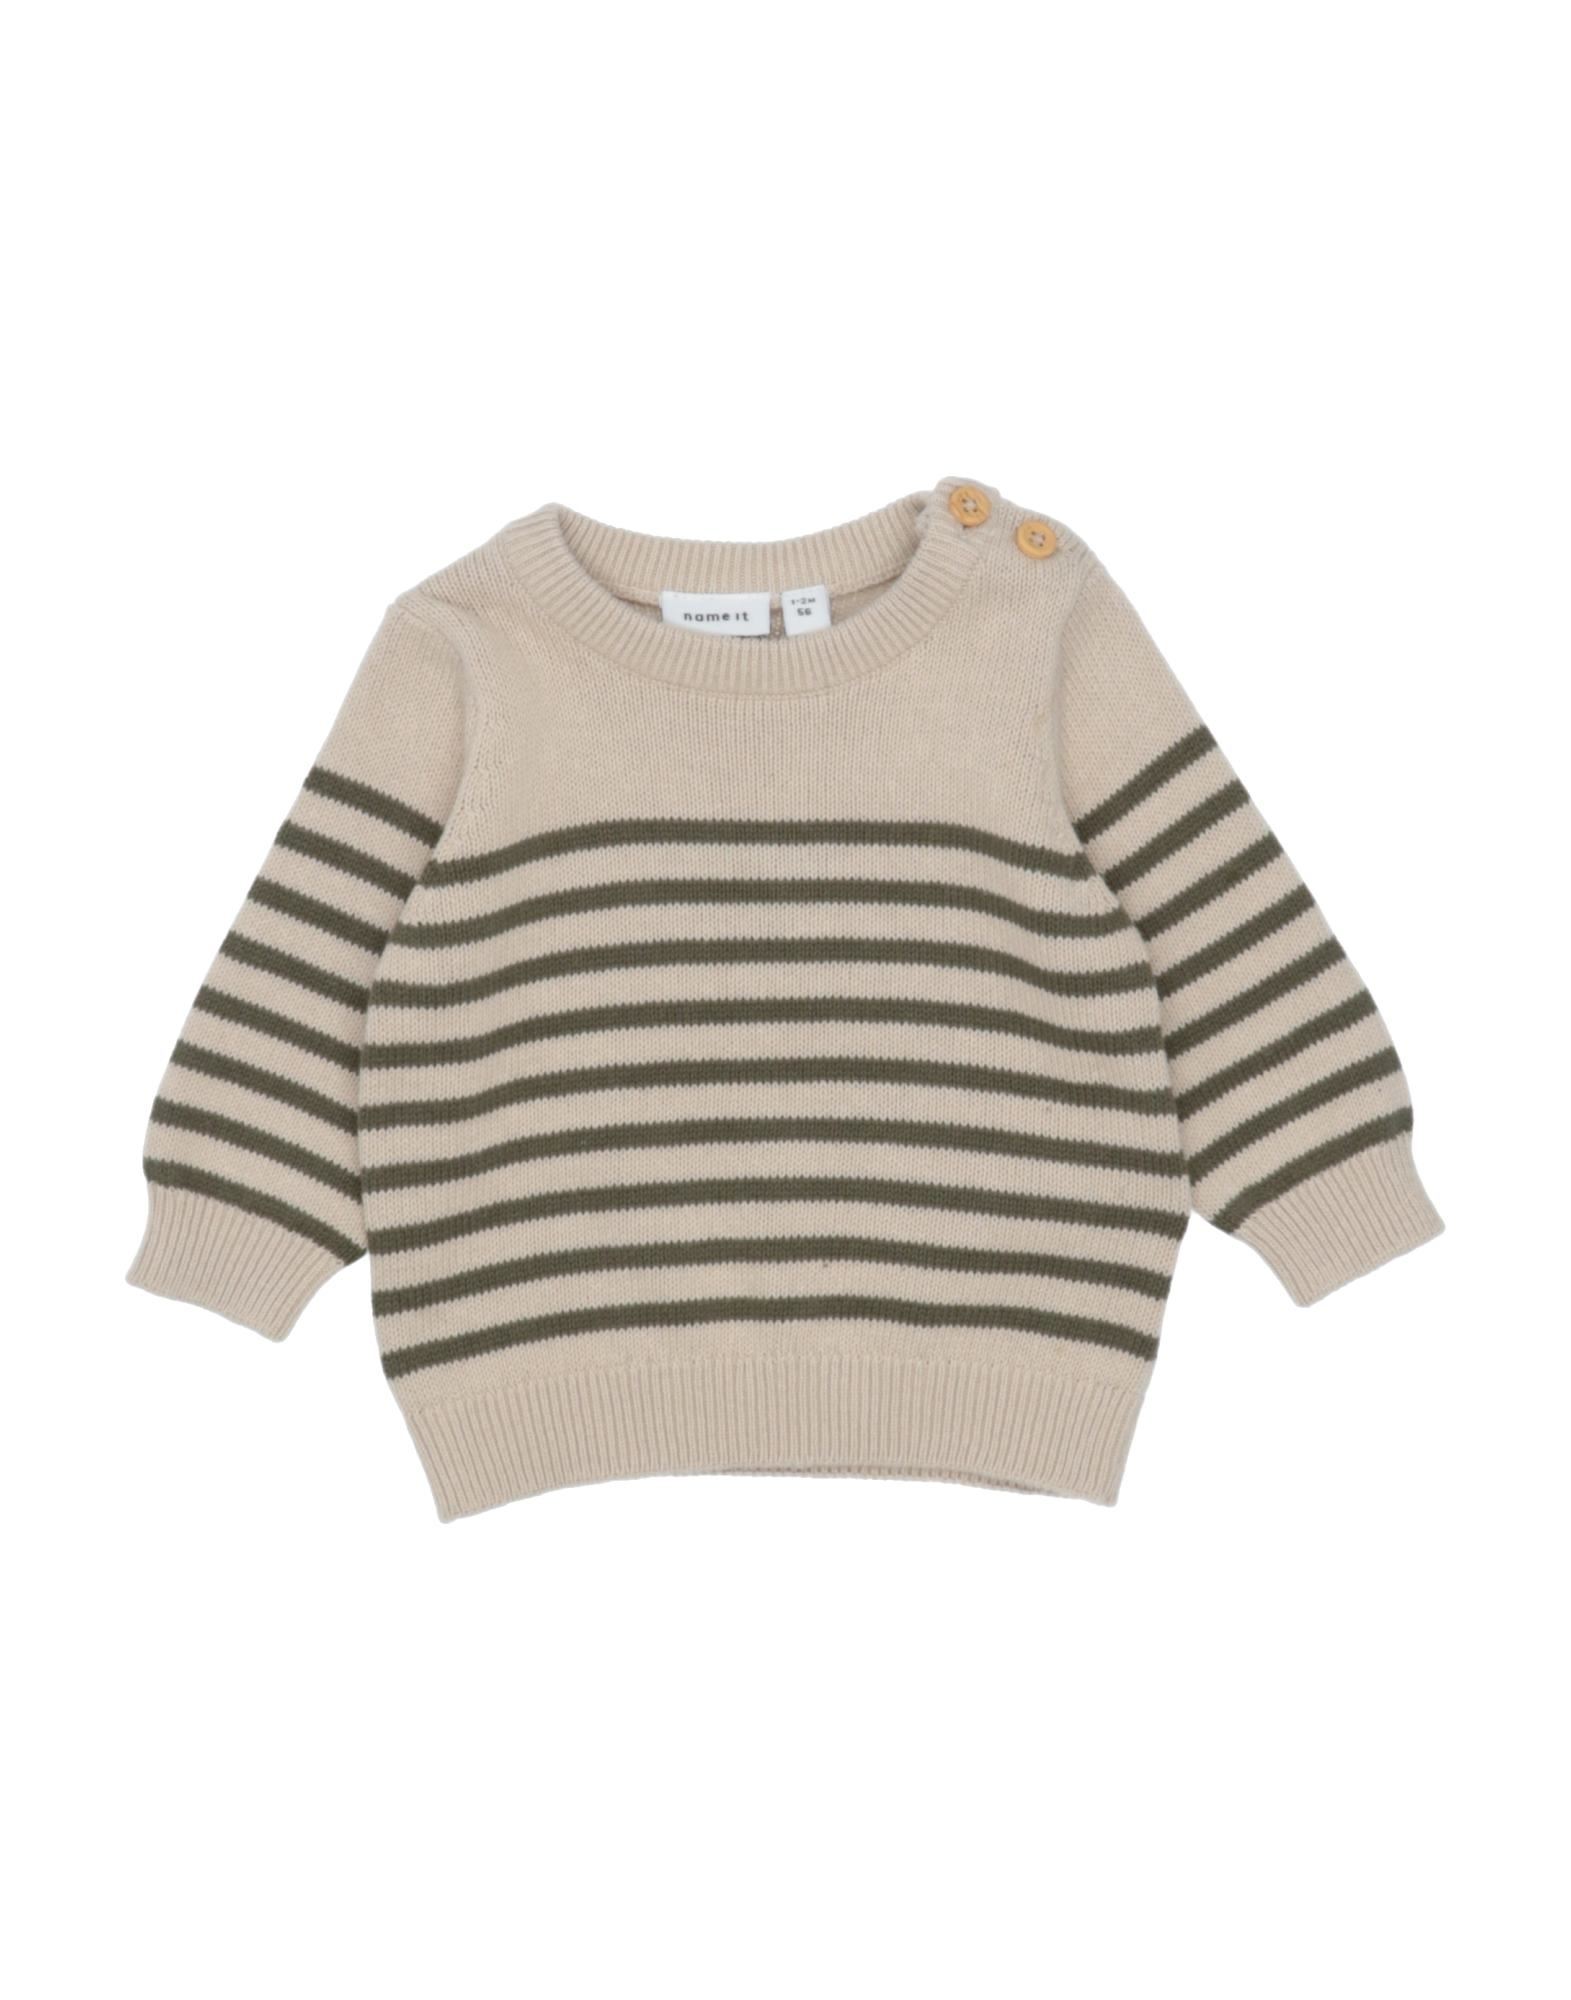 Name It® Kids' Sweaters In Beige